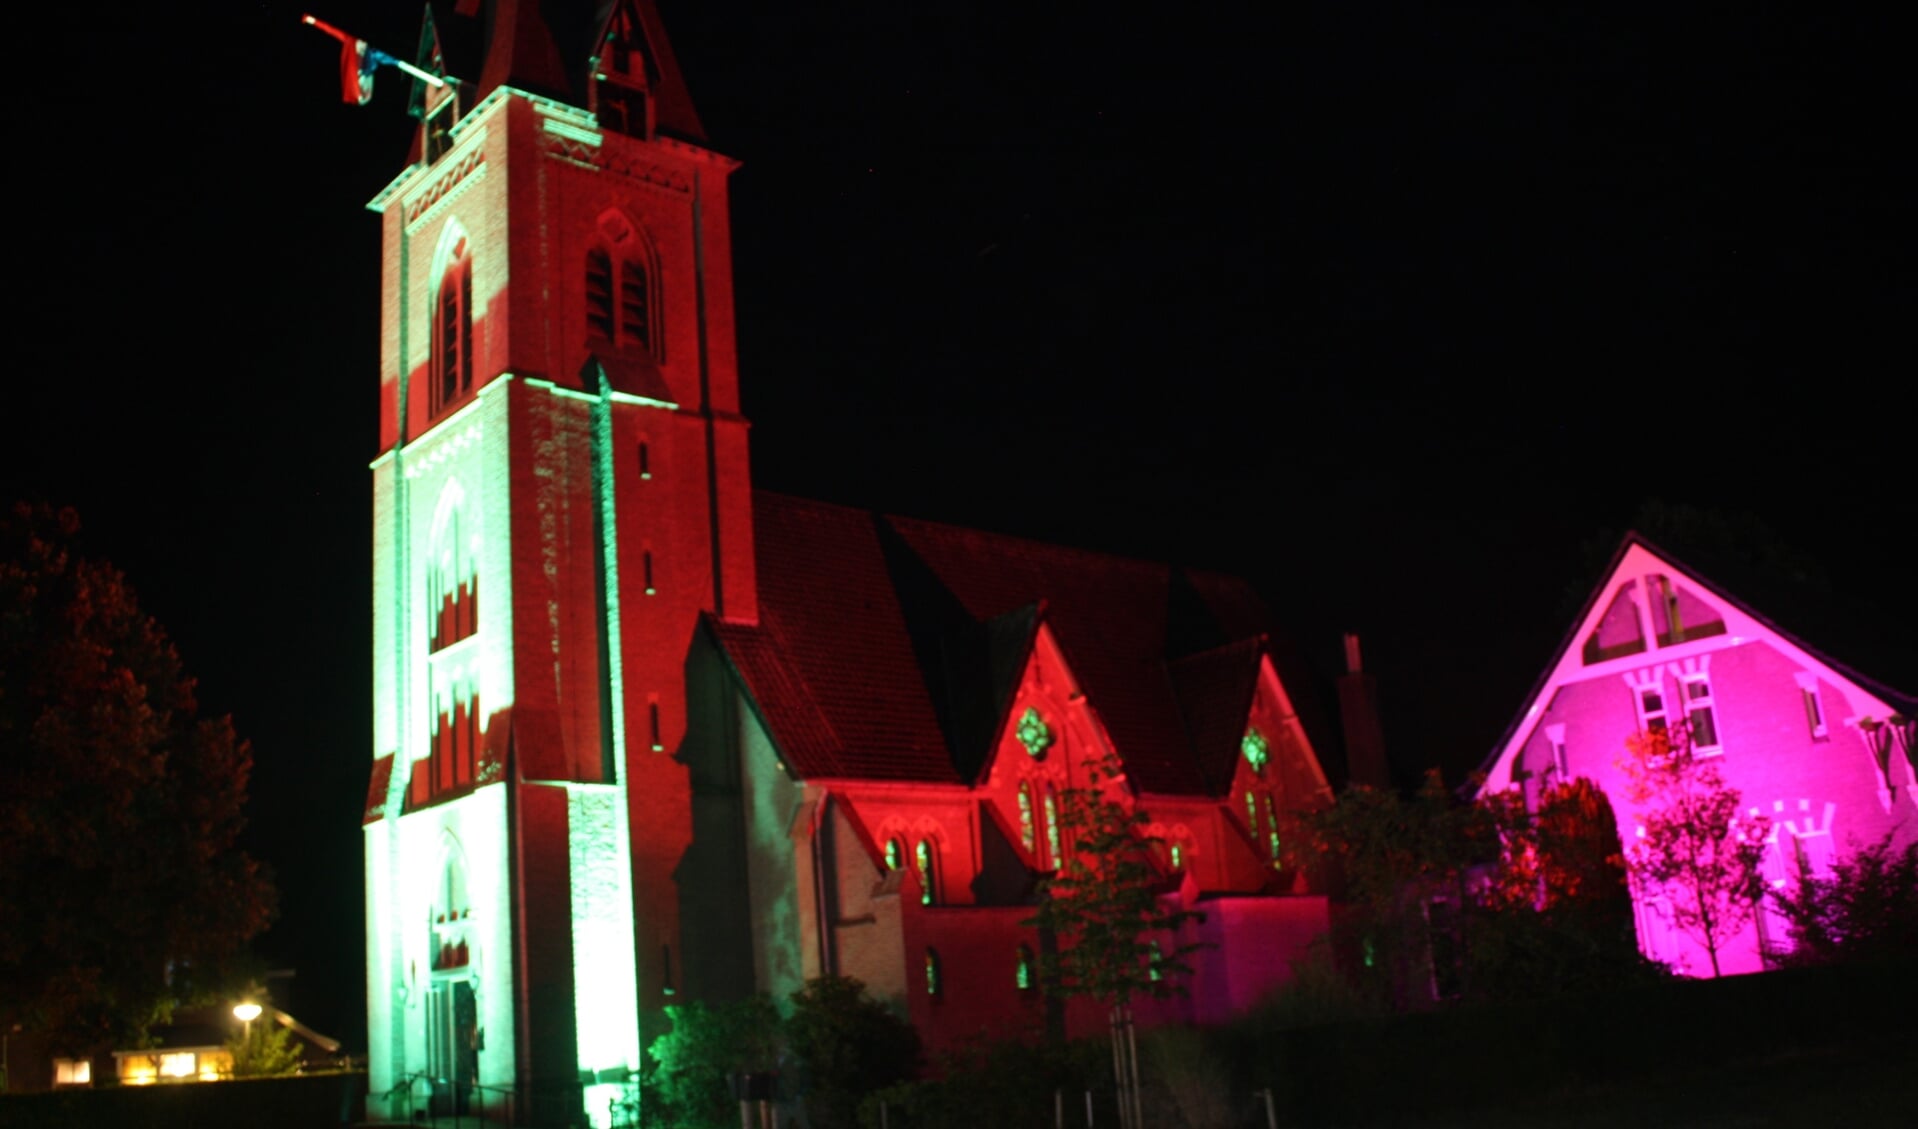  De mooie Sint Willibrorduskerk staat helaas ook op de lijst met kerken die over drie tot vijf jaar zullen worden gesloten. Foto: PR. 